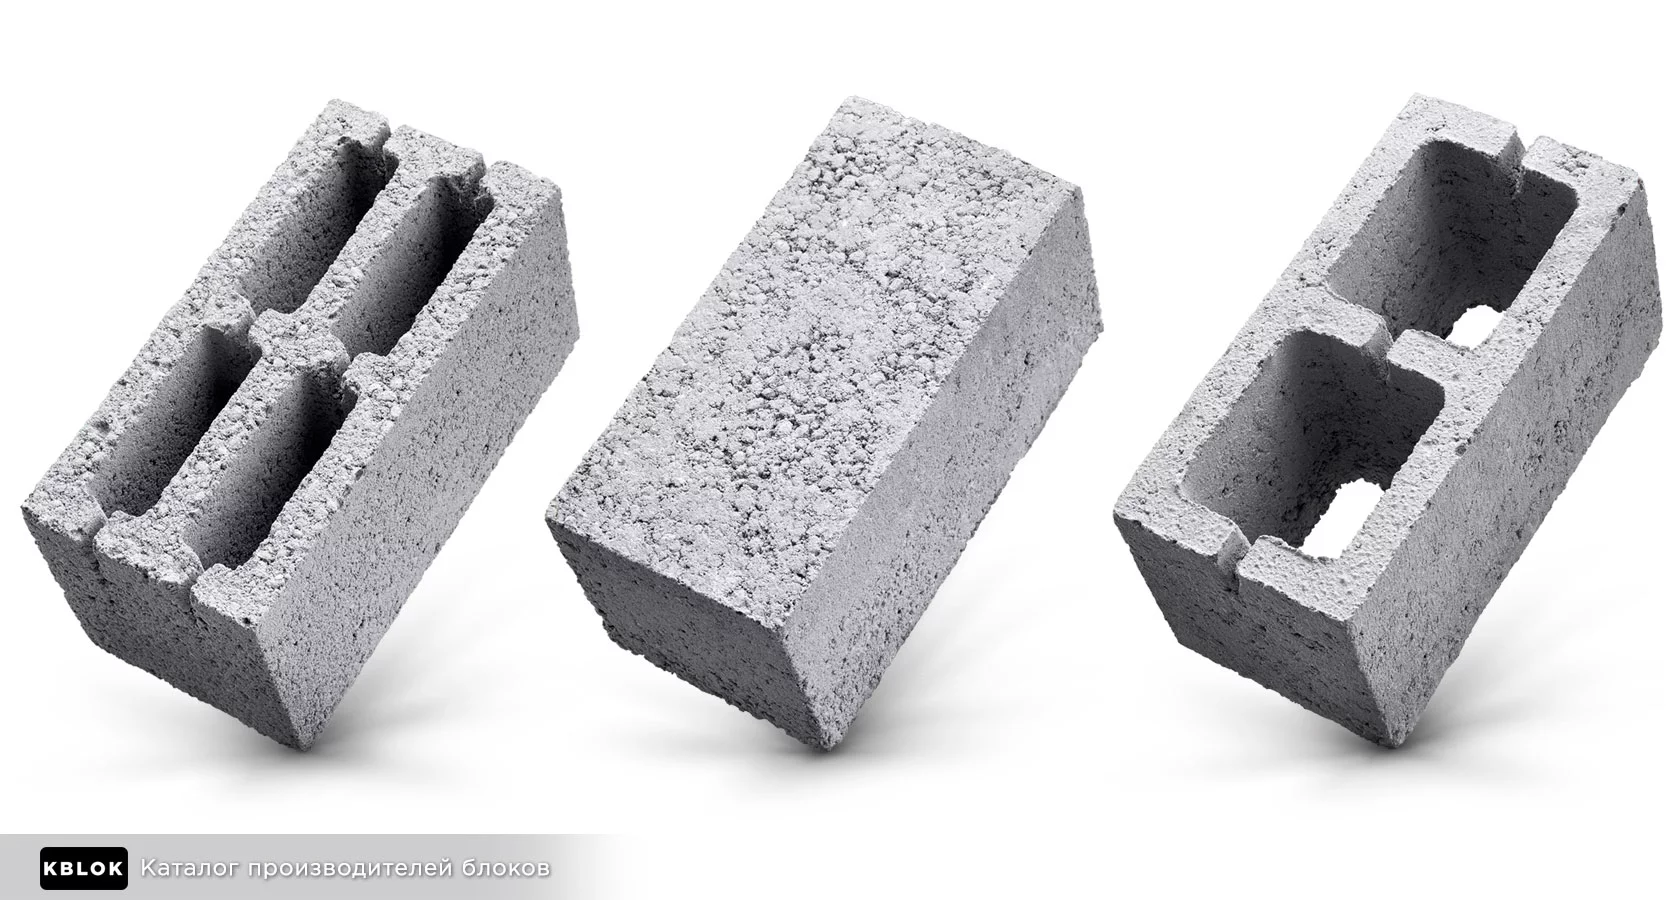 Керамзитобетонные блоки с двумя типами пустот - какие лучше? | Строительный форум натяжныепотолкибрянск.рф